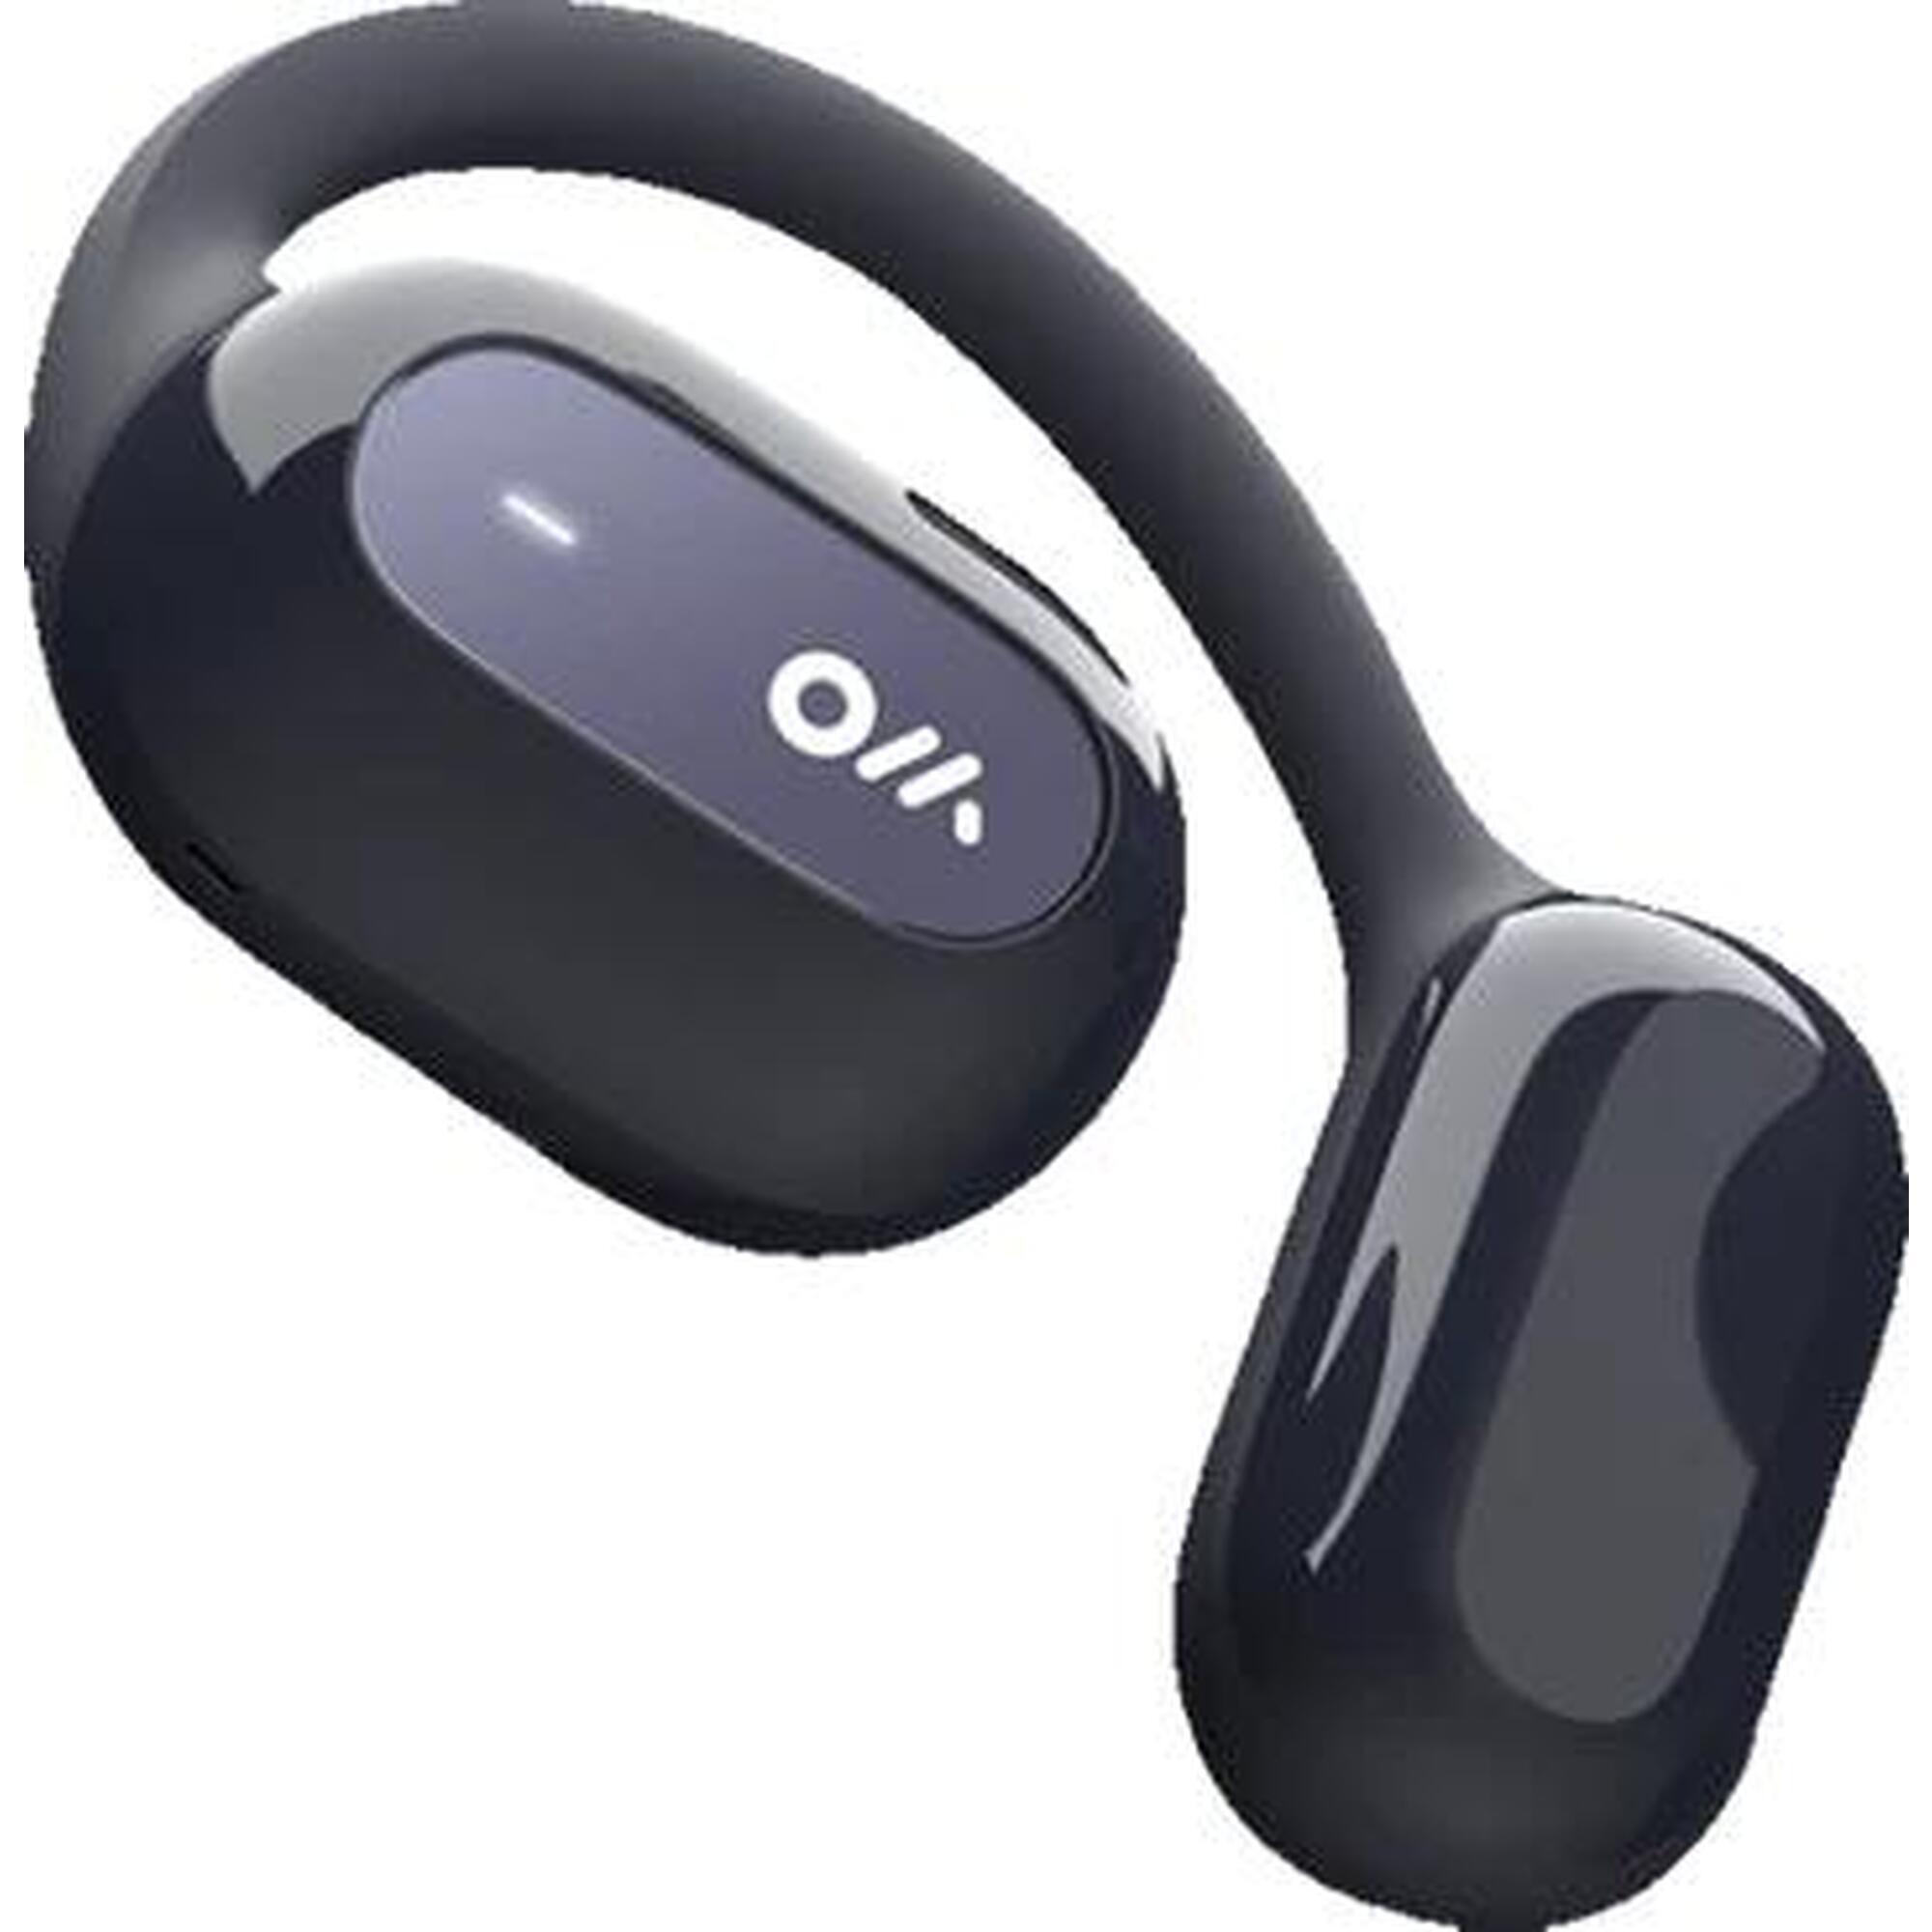 OWS2 開放式可穿戴立體聲藍芽耳機 - 火星橙